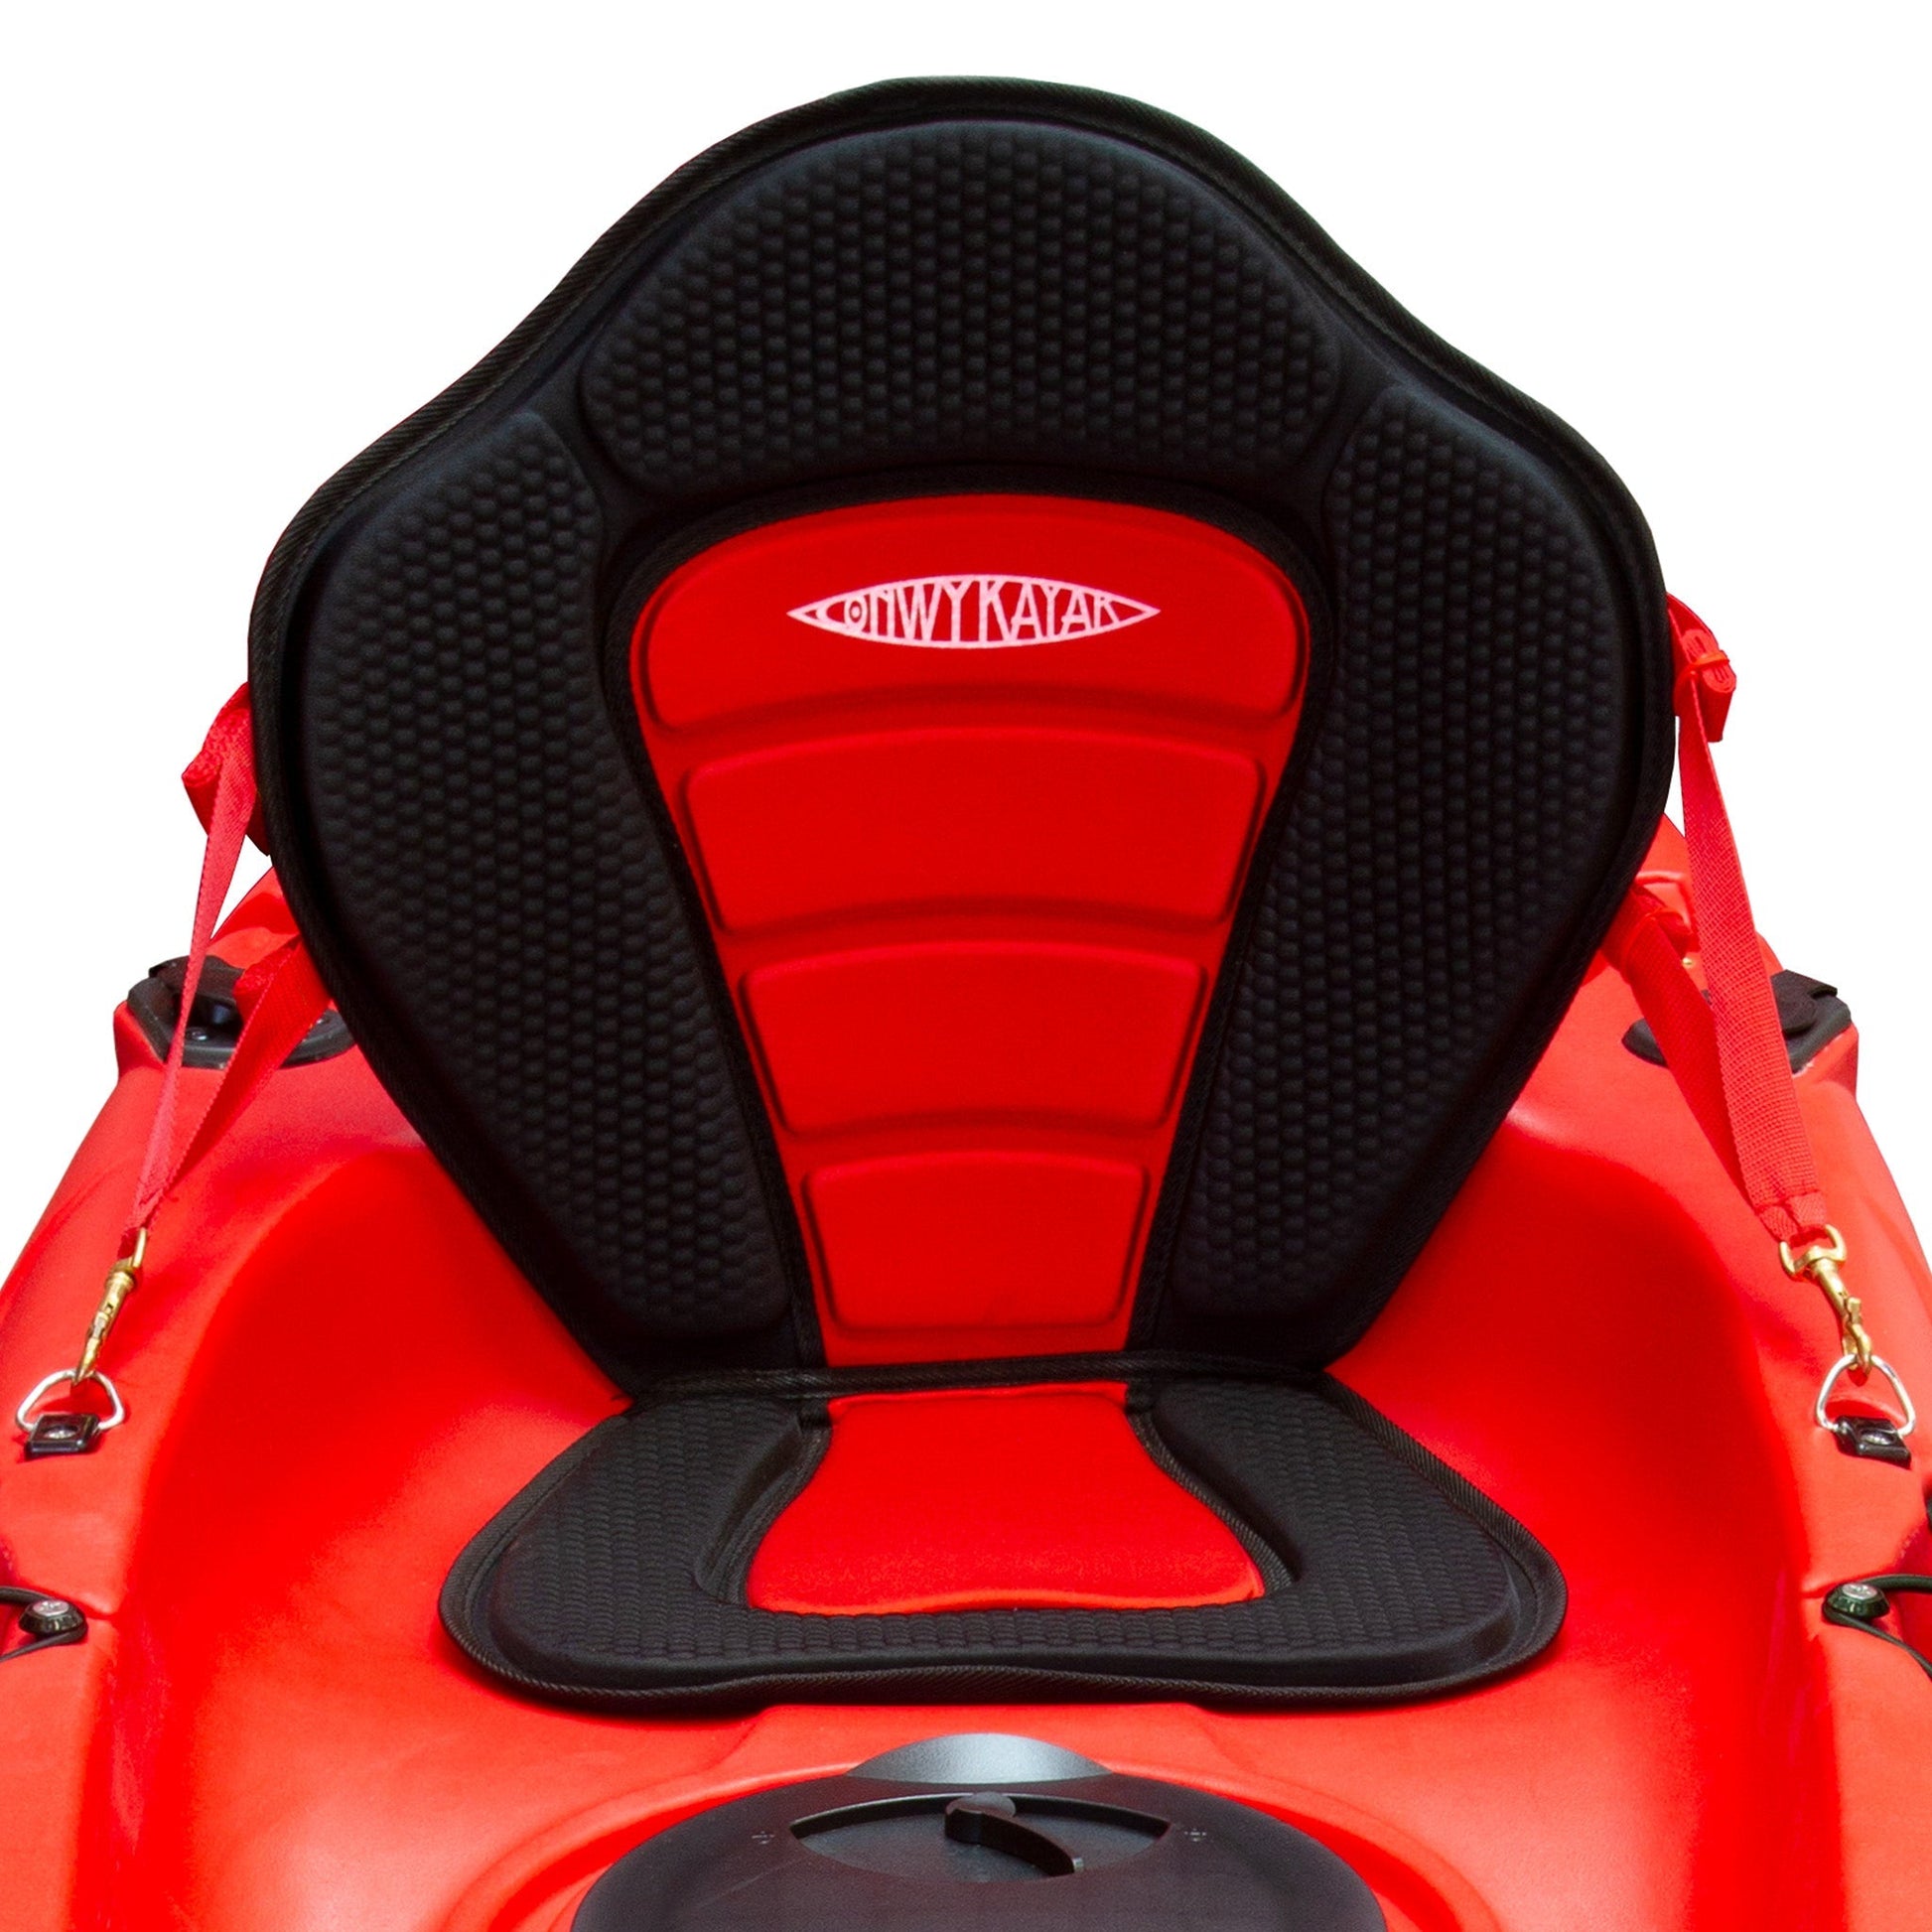 Conwy Kayak - High Performance Adjustable Kayak Seat - 2